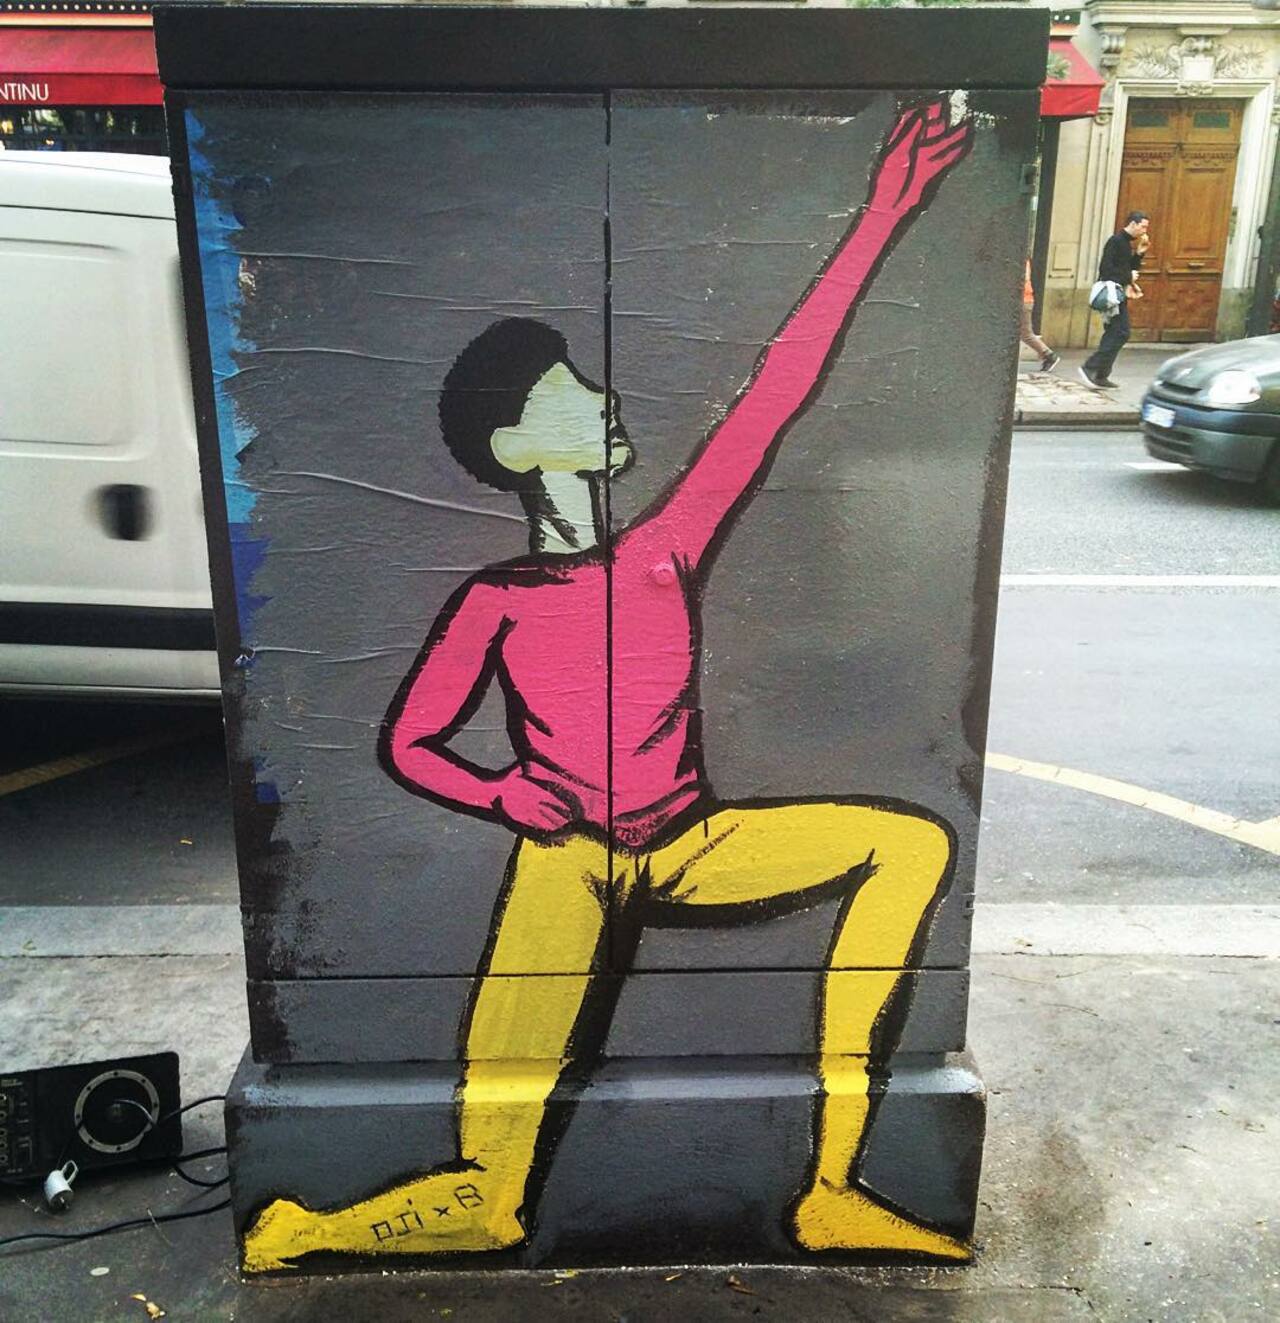 circumjacent_fr: #Paris #graffiti photo by julosteart http://ift.tt/1jrO7AH #StreetArt http://t.co/QnCvrCMr5w